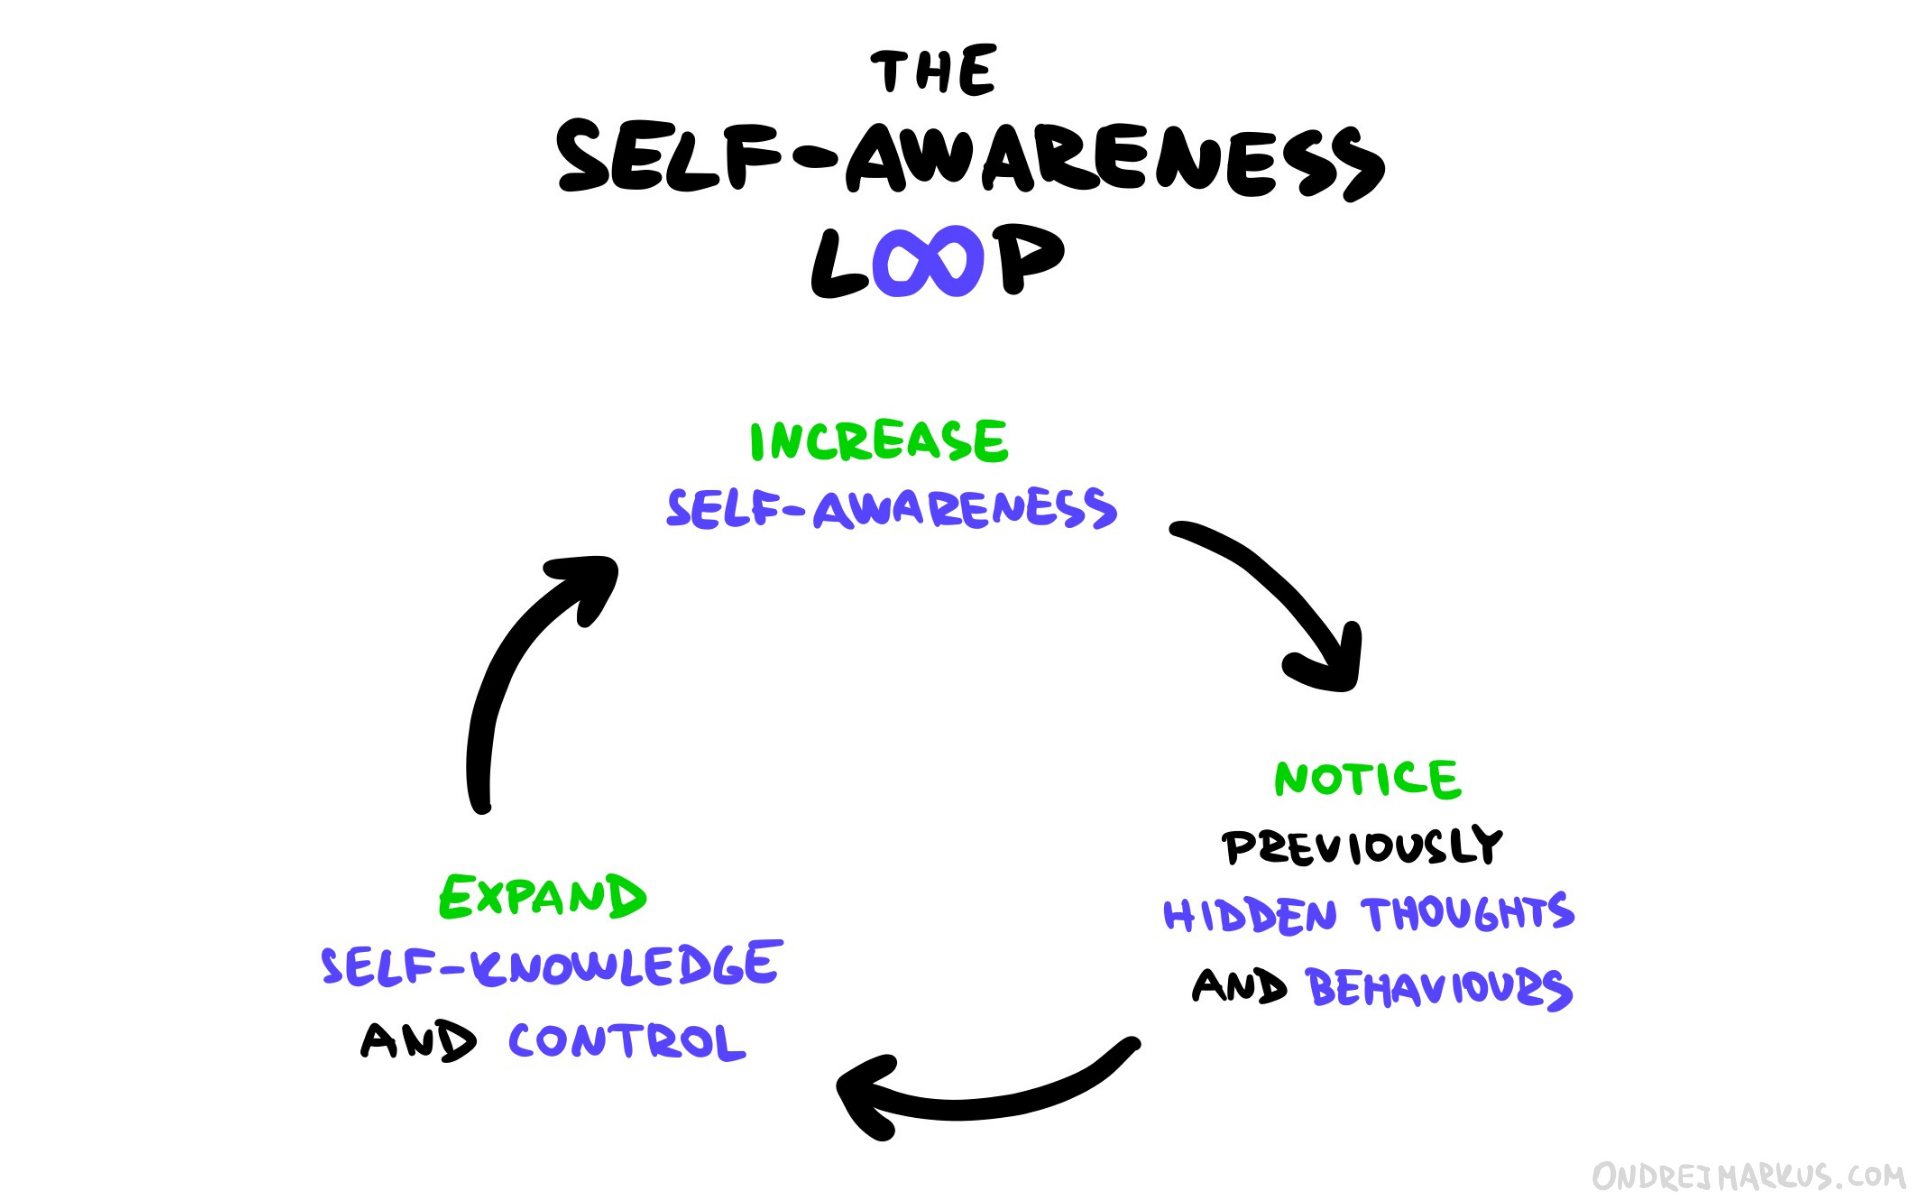 The self-awareness loop